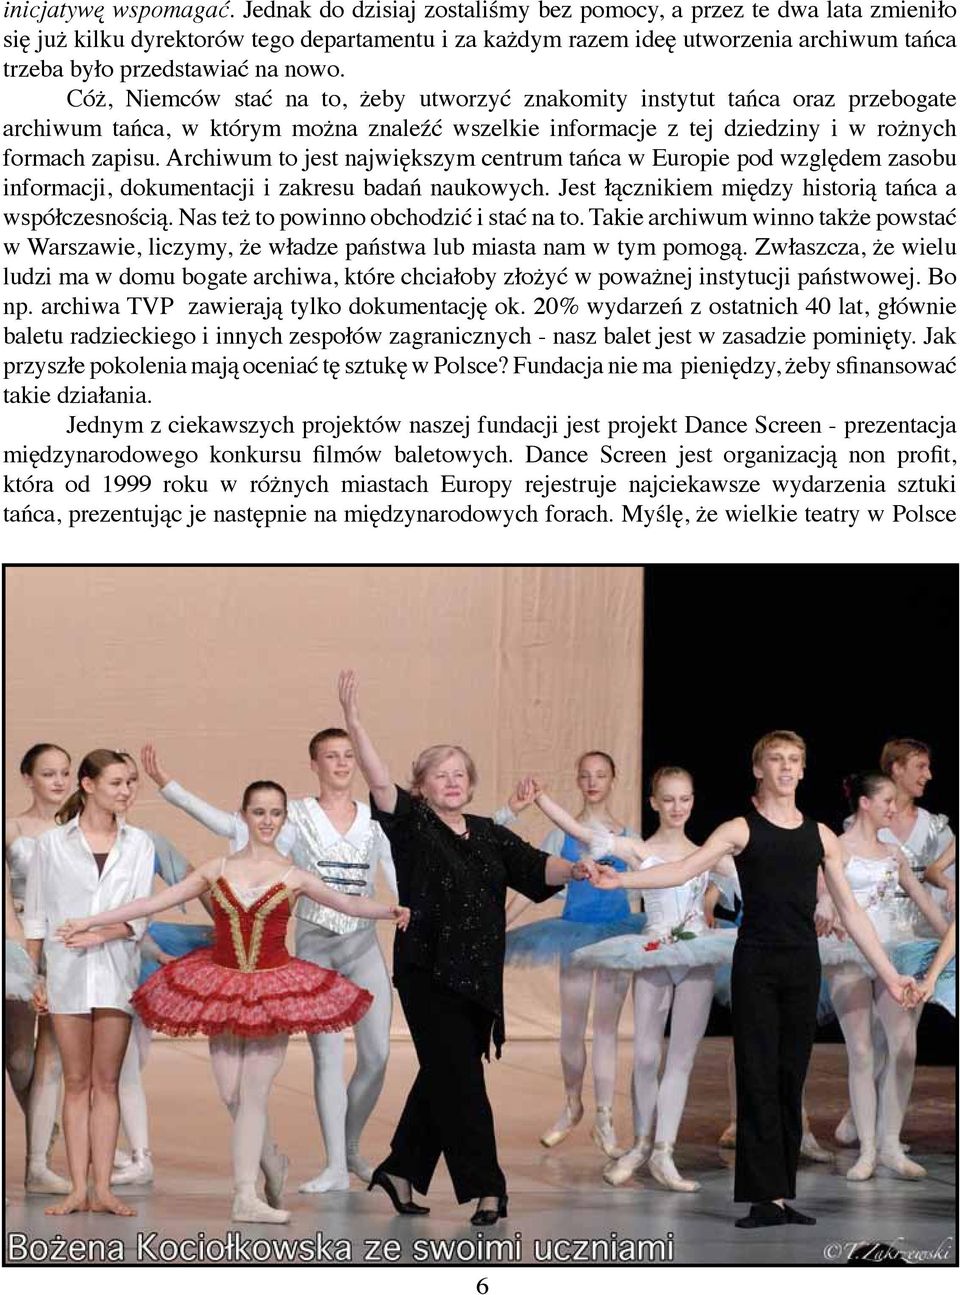 Cóż, Niemców stać na to, żeby utworzyć znakomity instytut tańca oraz przebogate archiwum tańca, w którym można znaleźć wszelkie informacje z tej dziedziny i w rożnych formach zapisu.